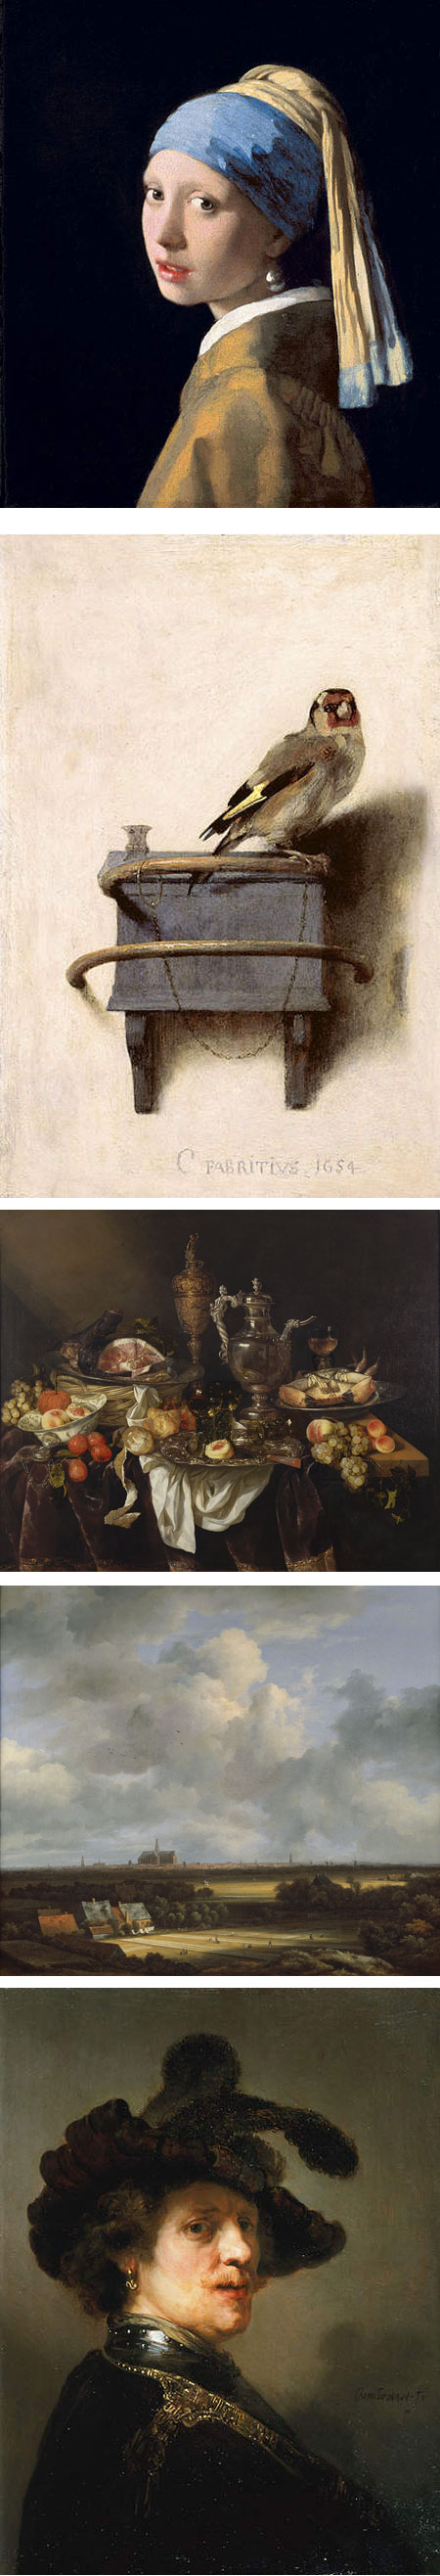 Girl With a Pearl Earring: Dutch Paintings From the Mauritshuis, Johnannes Vermeer, Carel Fabritius, Abraham van Beyeren, Jacob van Ruisdael, Reambrandt van Rijn